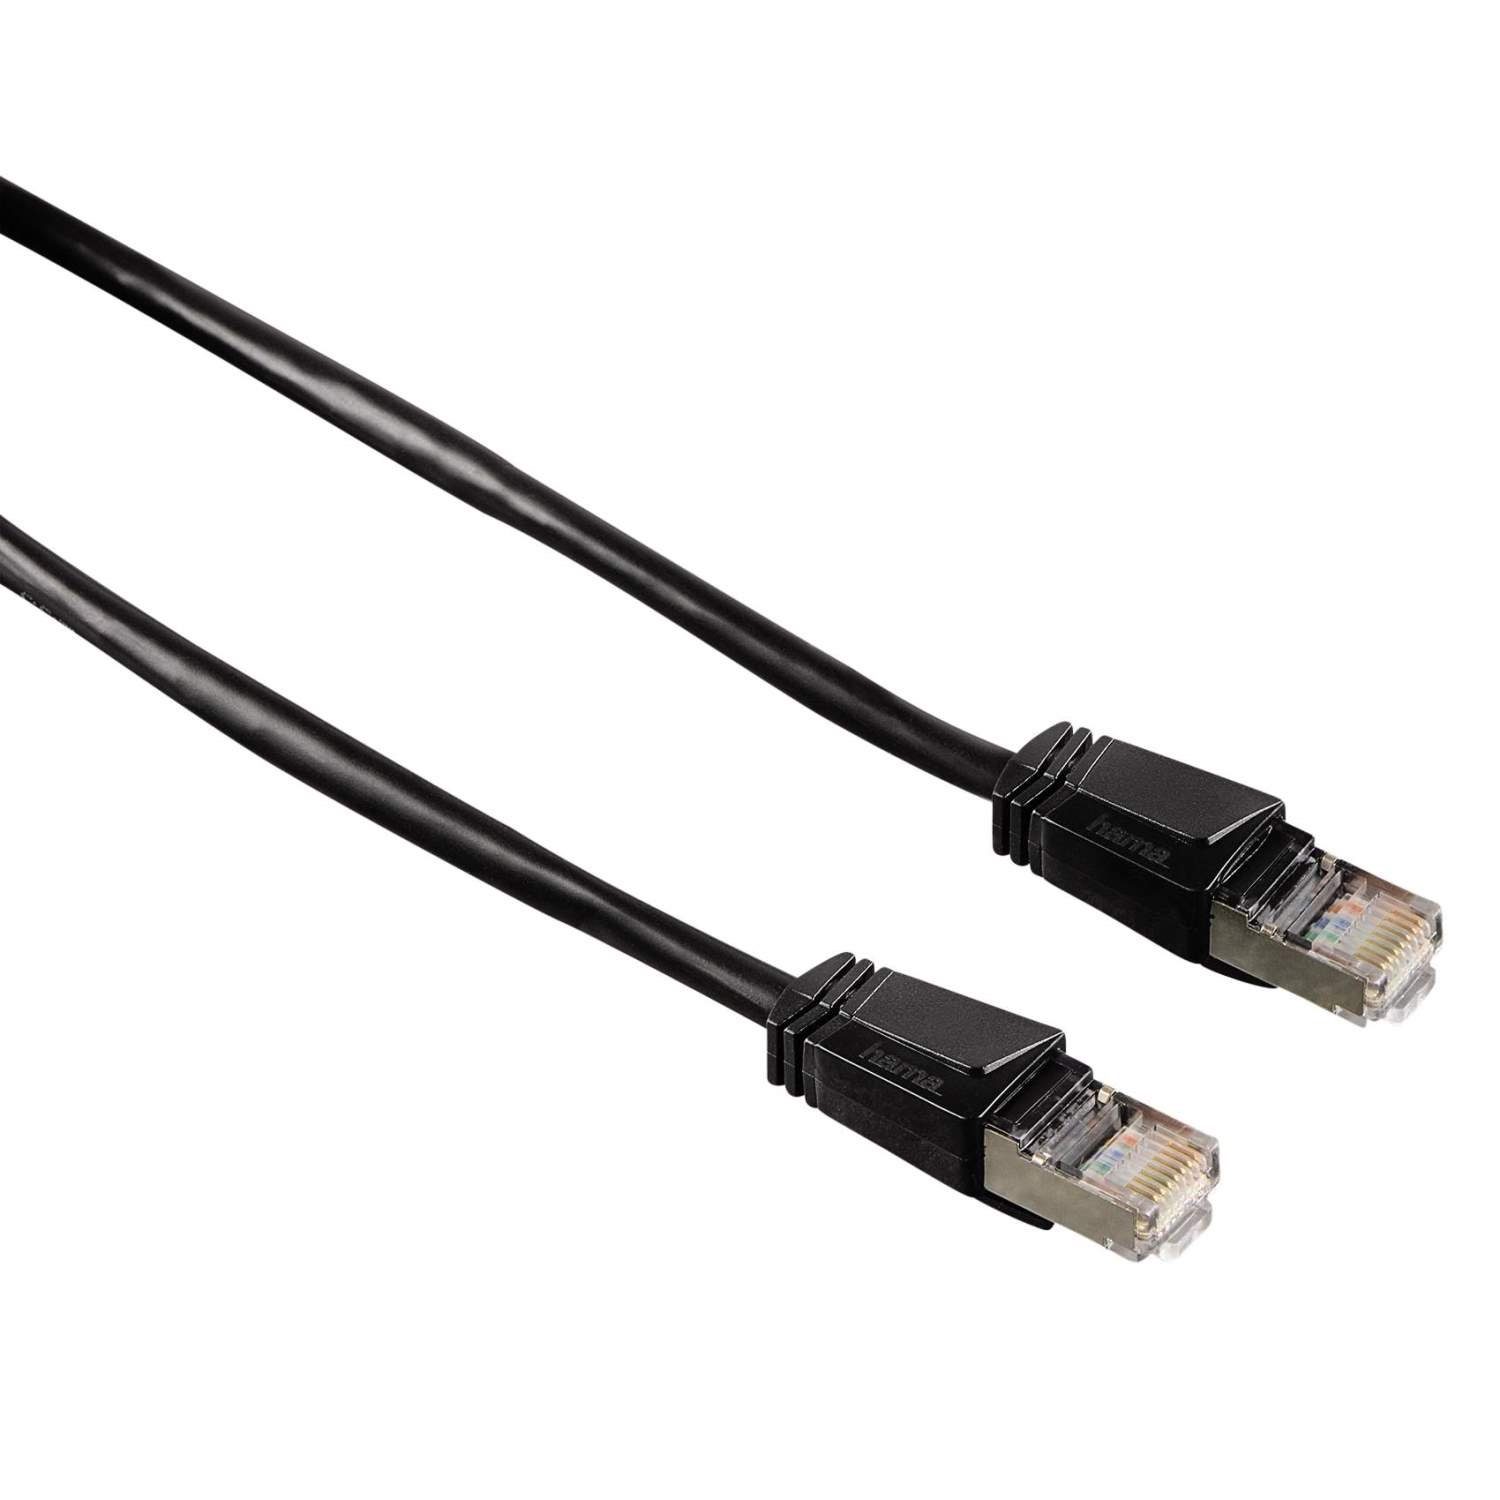 Hama 5m Netzwerk-Kabel Cat5e STP Lan-Kabel Schwarz LAN-Kabel, RJ45, Kein (500 cm), Patch-Kabel Cat 5e Gigabit Ethernet